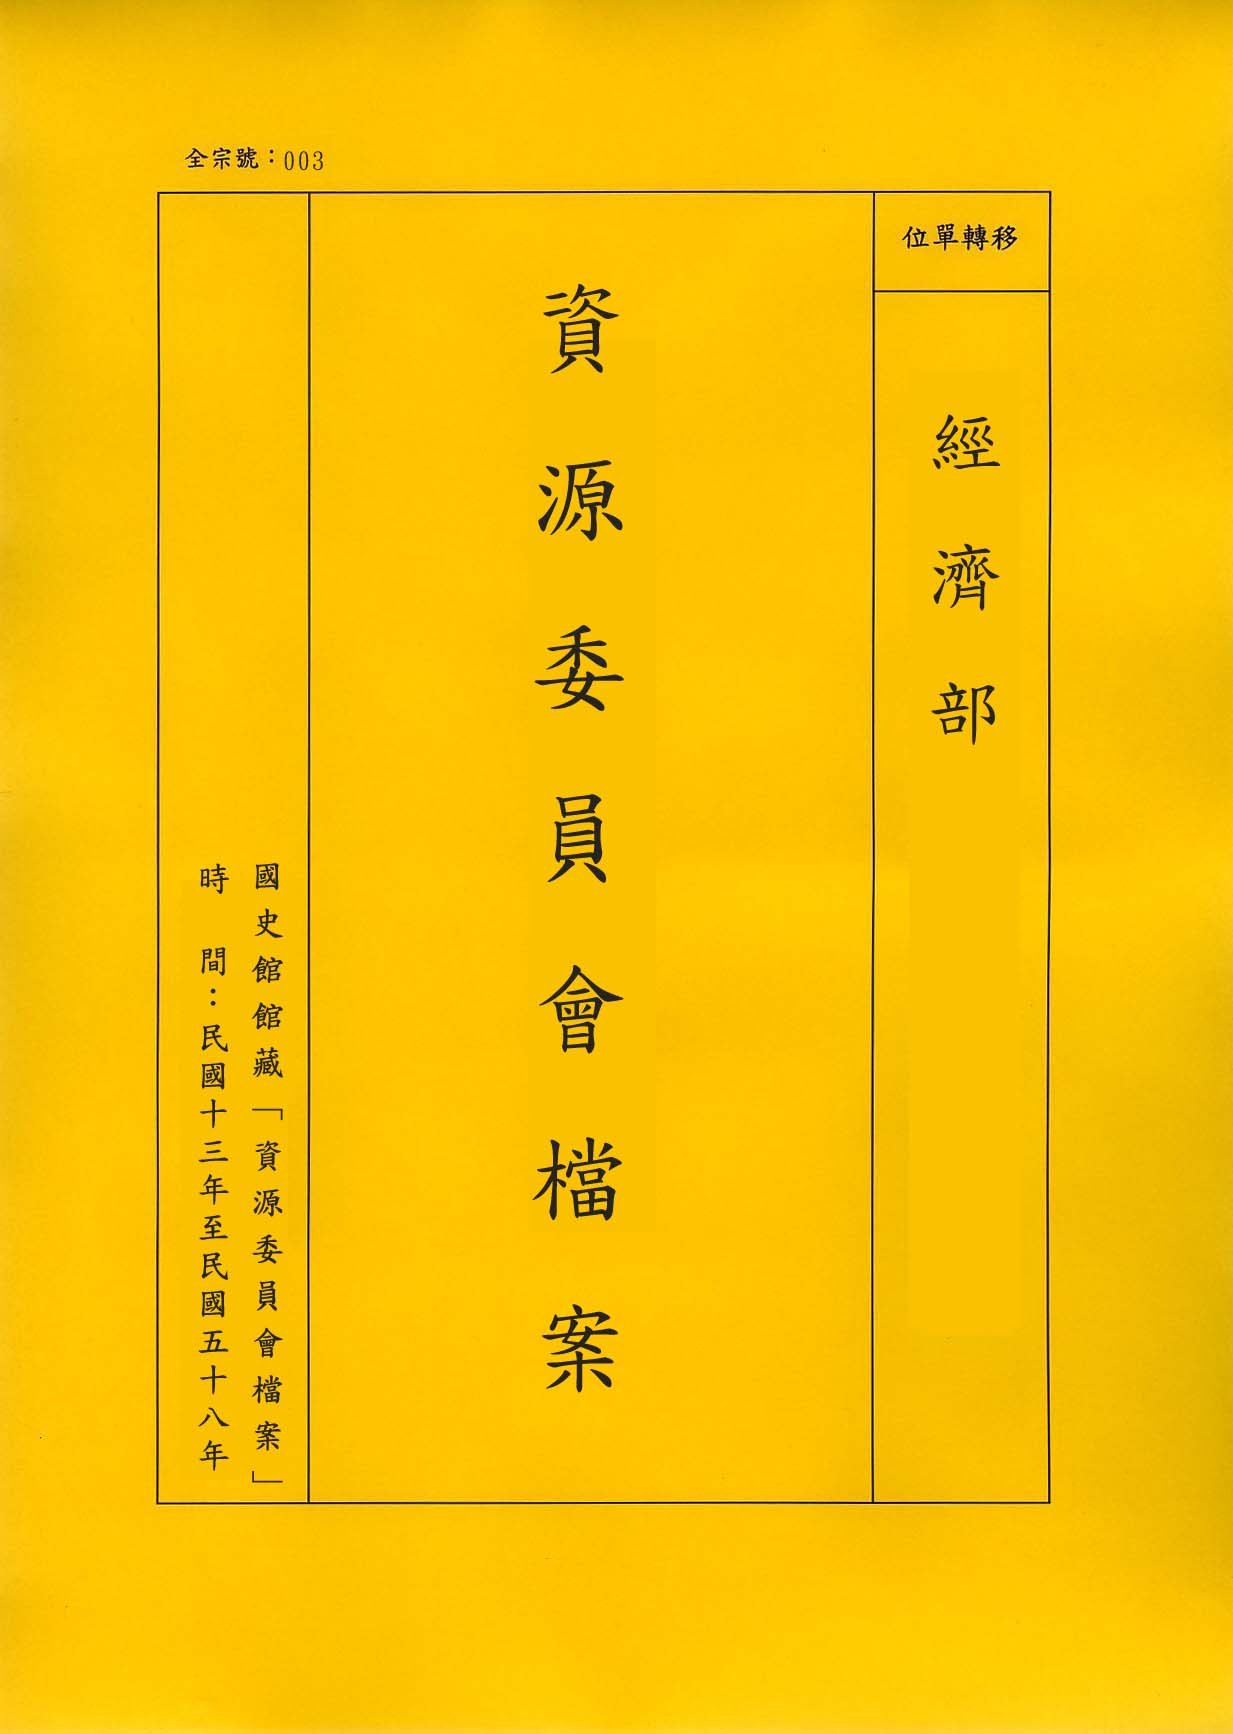 卷名:織染業工廠調查表—天津(一)(003-010306-0443)